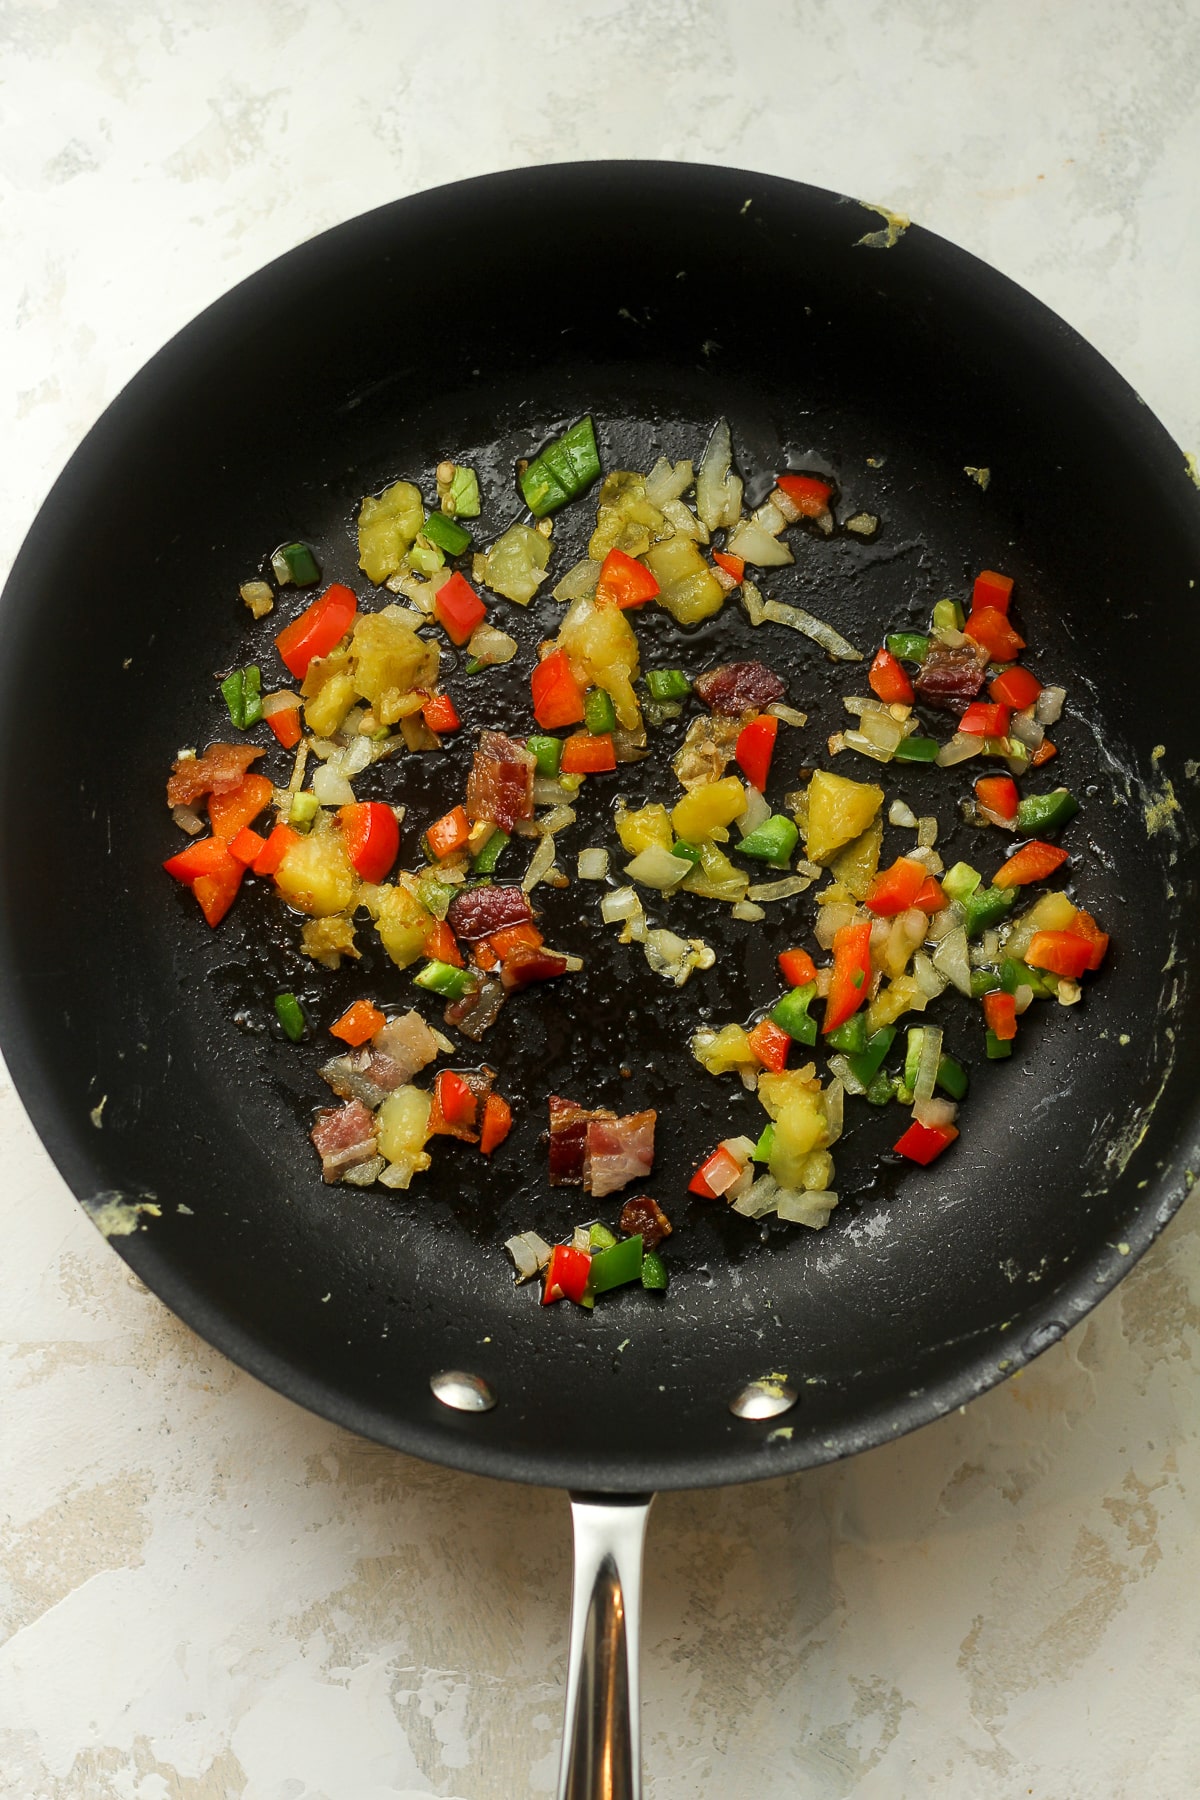 A pan of the sautéed veggies.